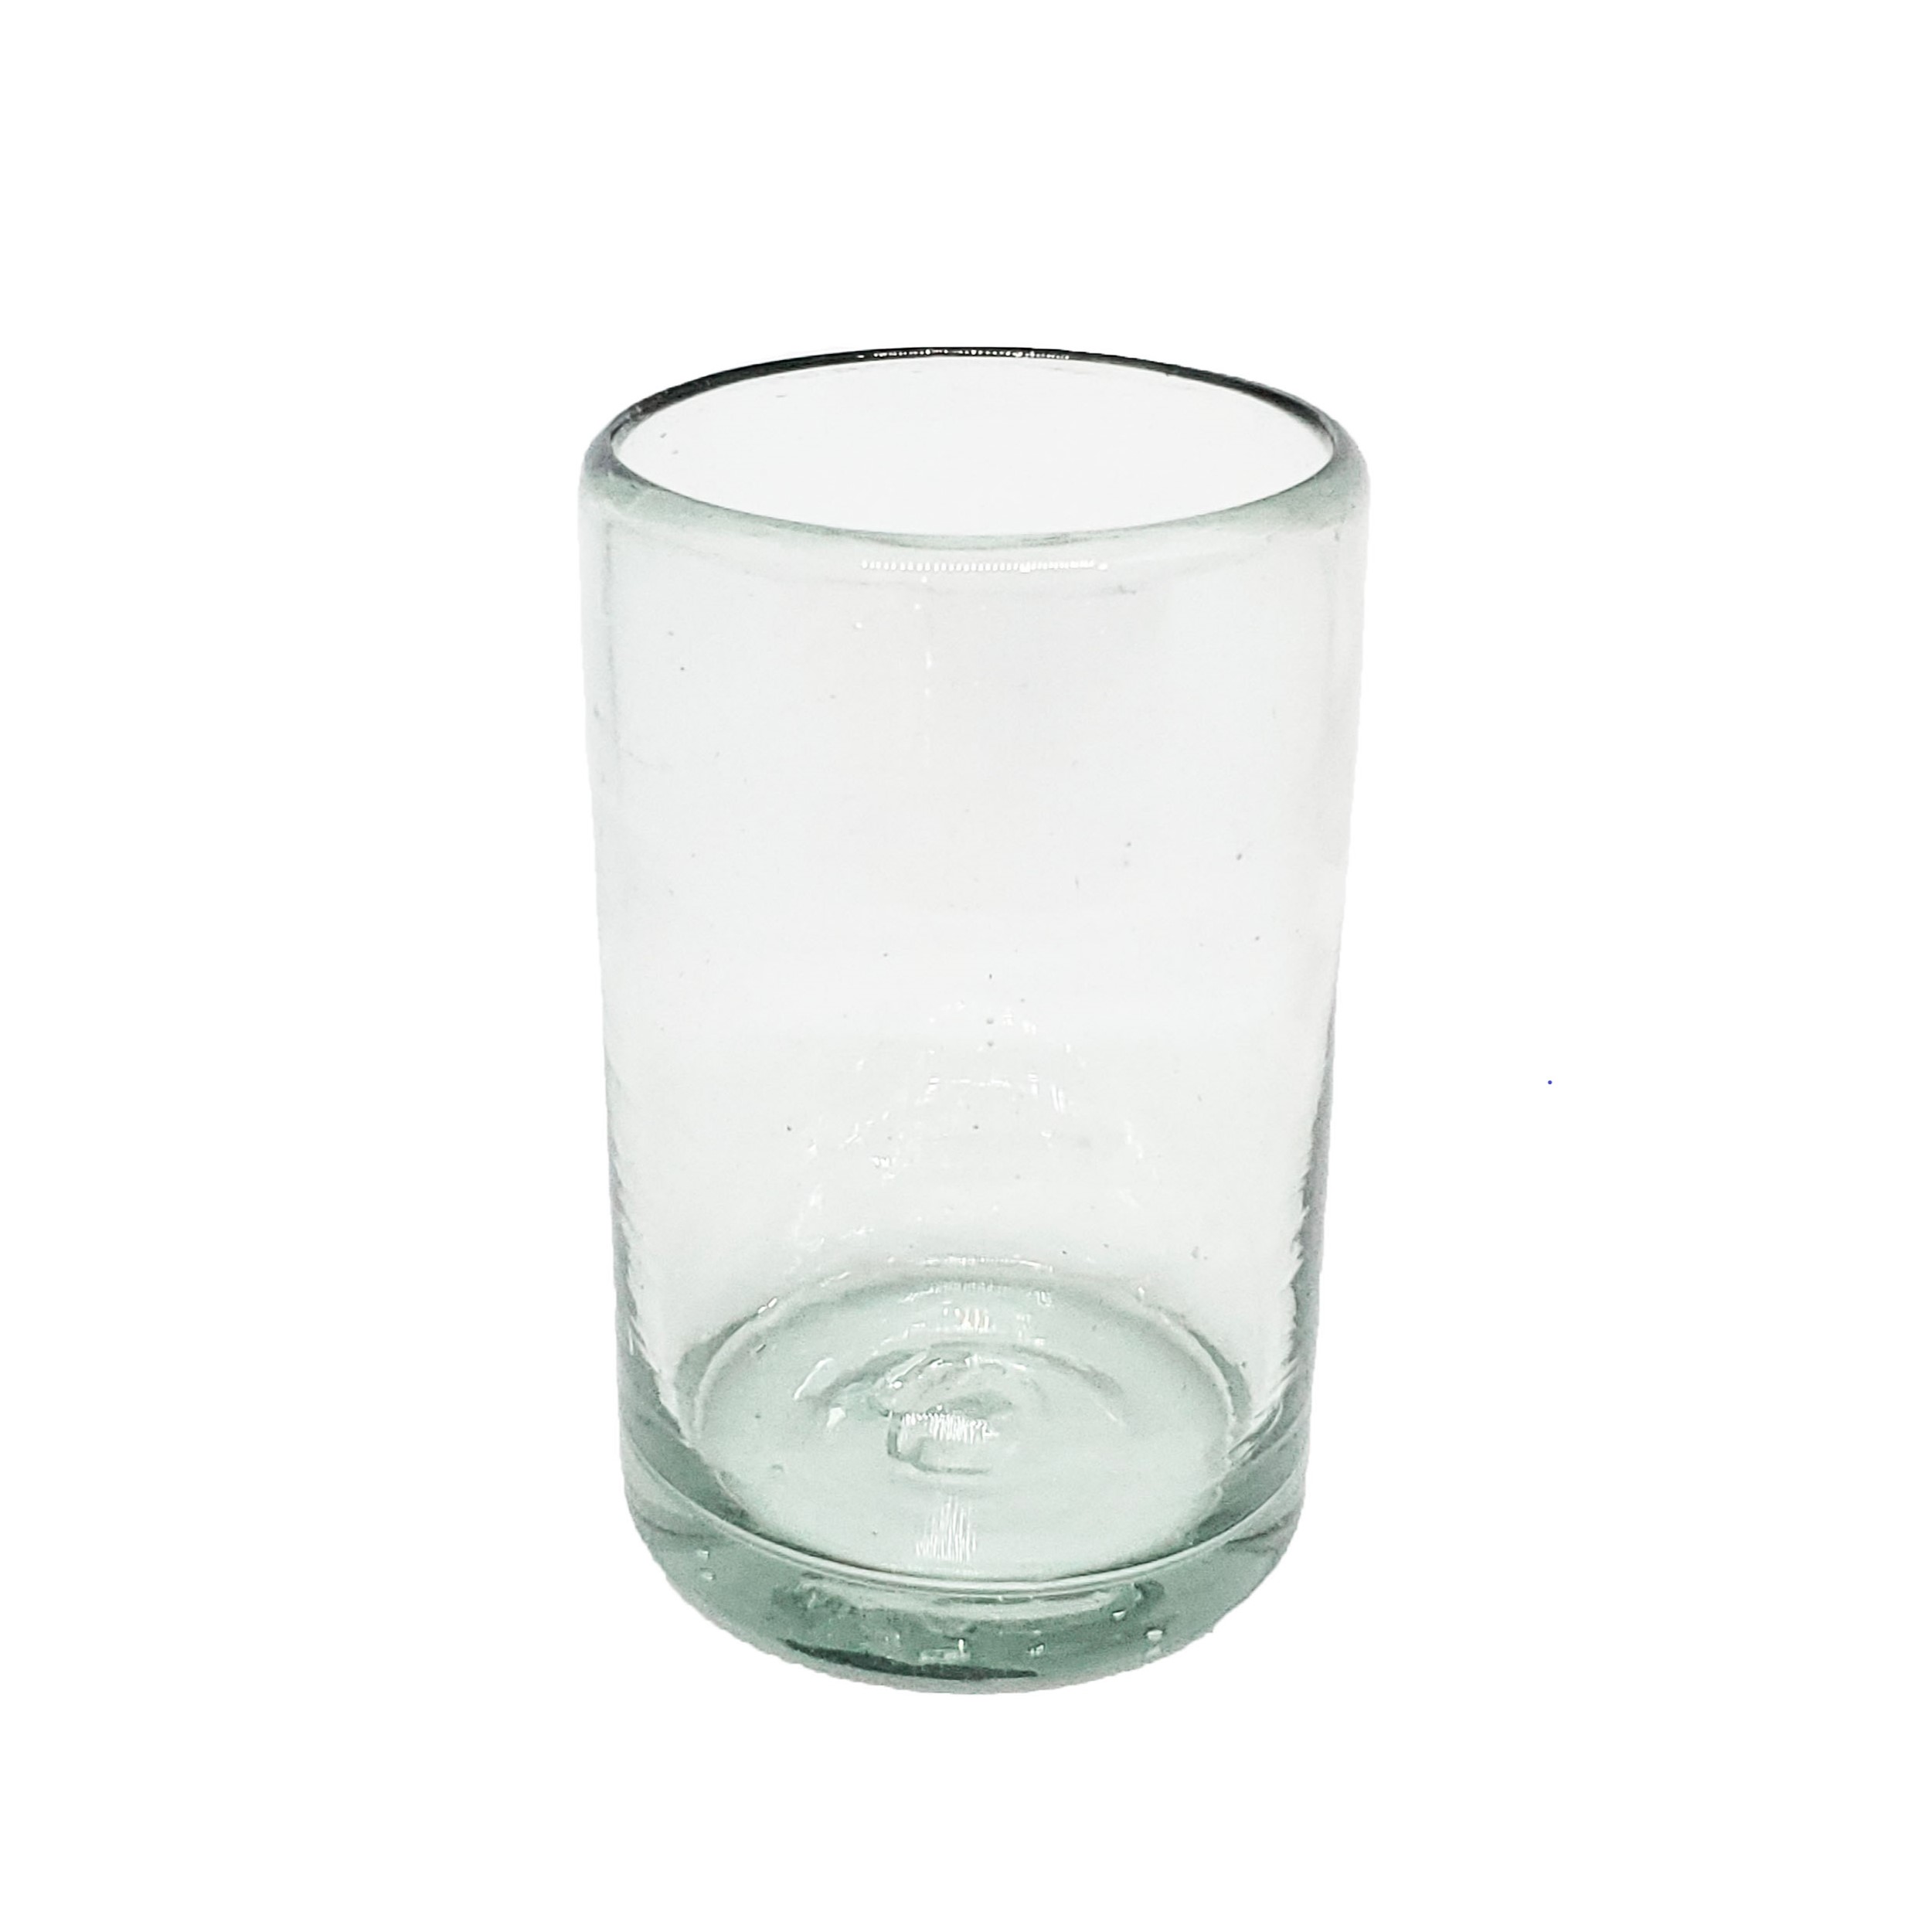 Vasos de Vidrio Soplado / Juego de 6 vasos Jugo 9oz Transparentes / Éstos artesanales vasos le darán un toque clásico a su bebida favorita.